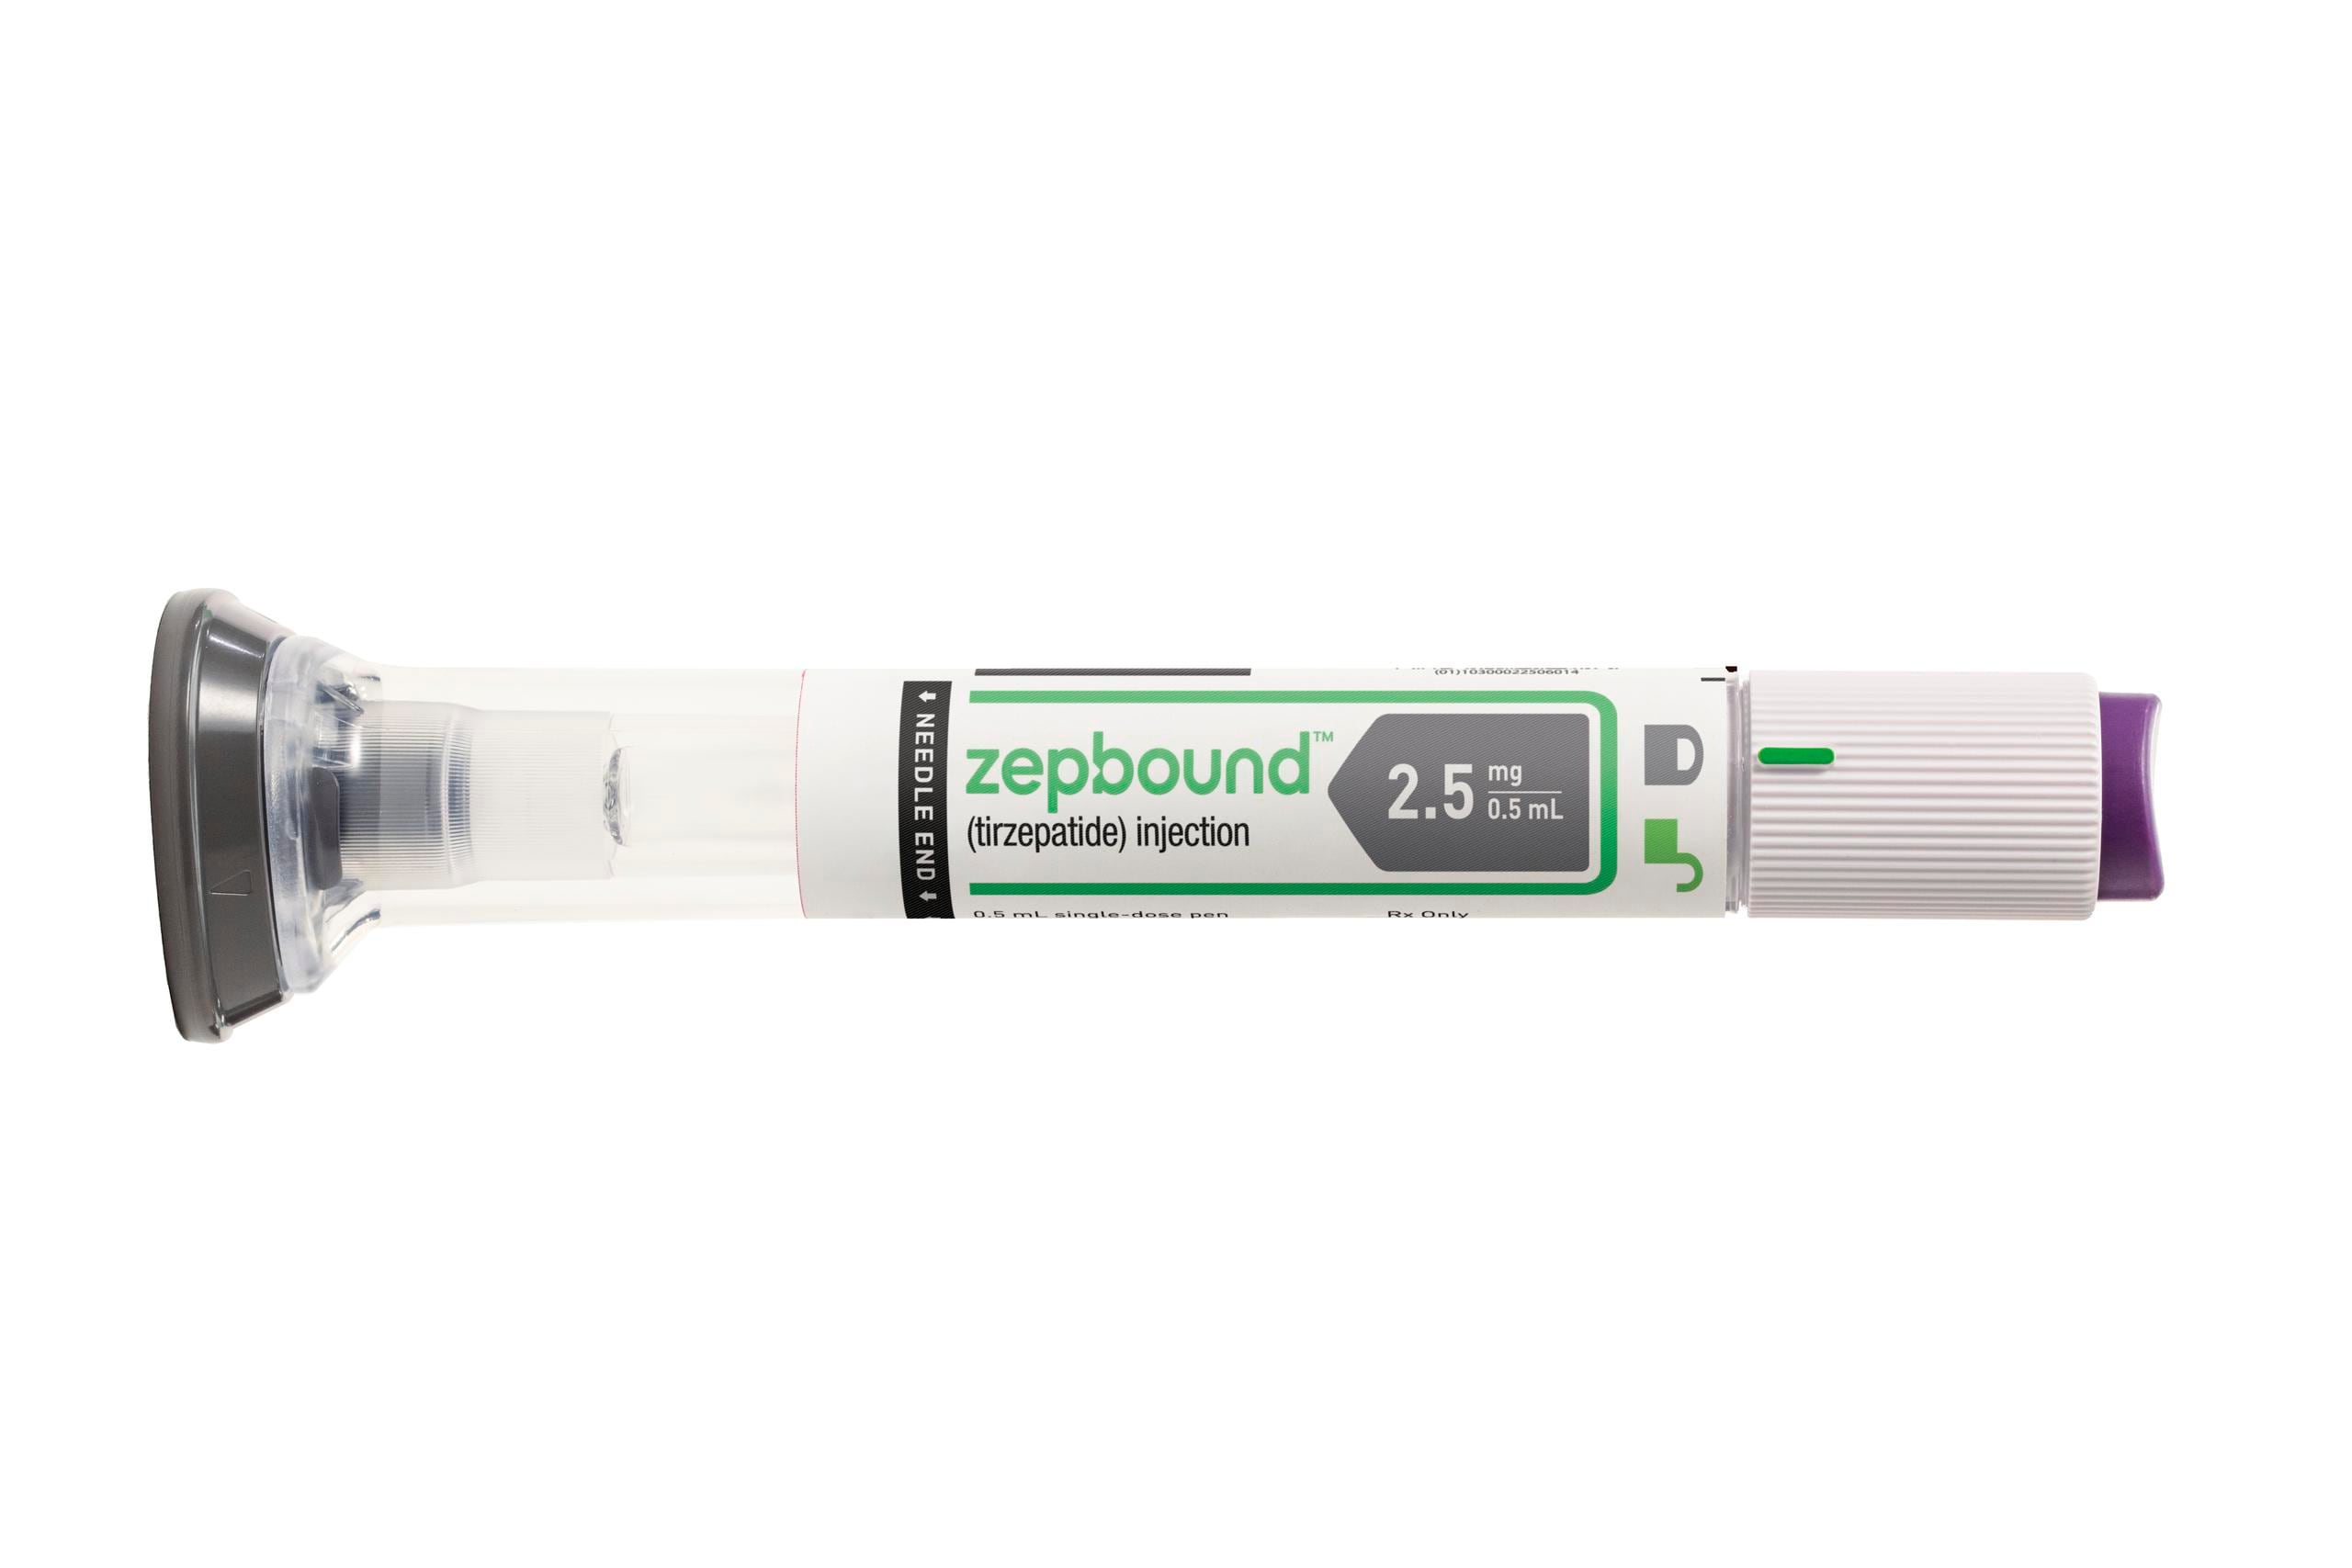 Zepbound debe combinarse con una dieta sana y ejercicio regular, señaló la FDA.